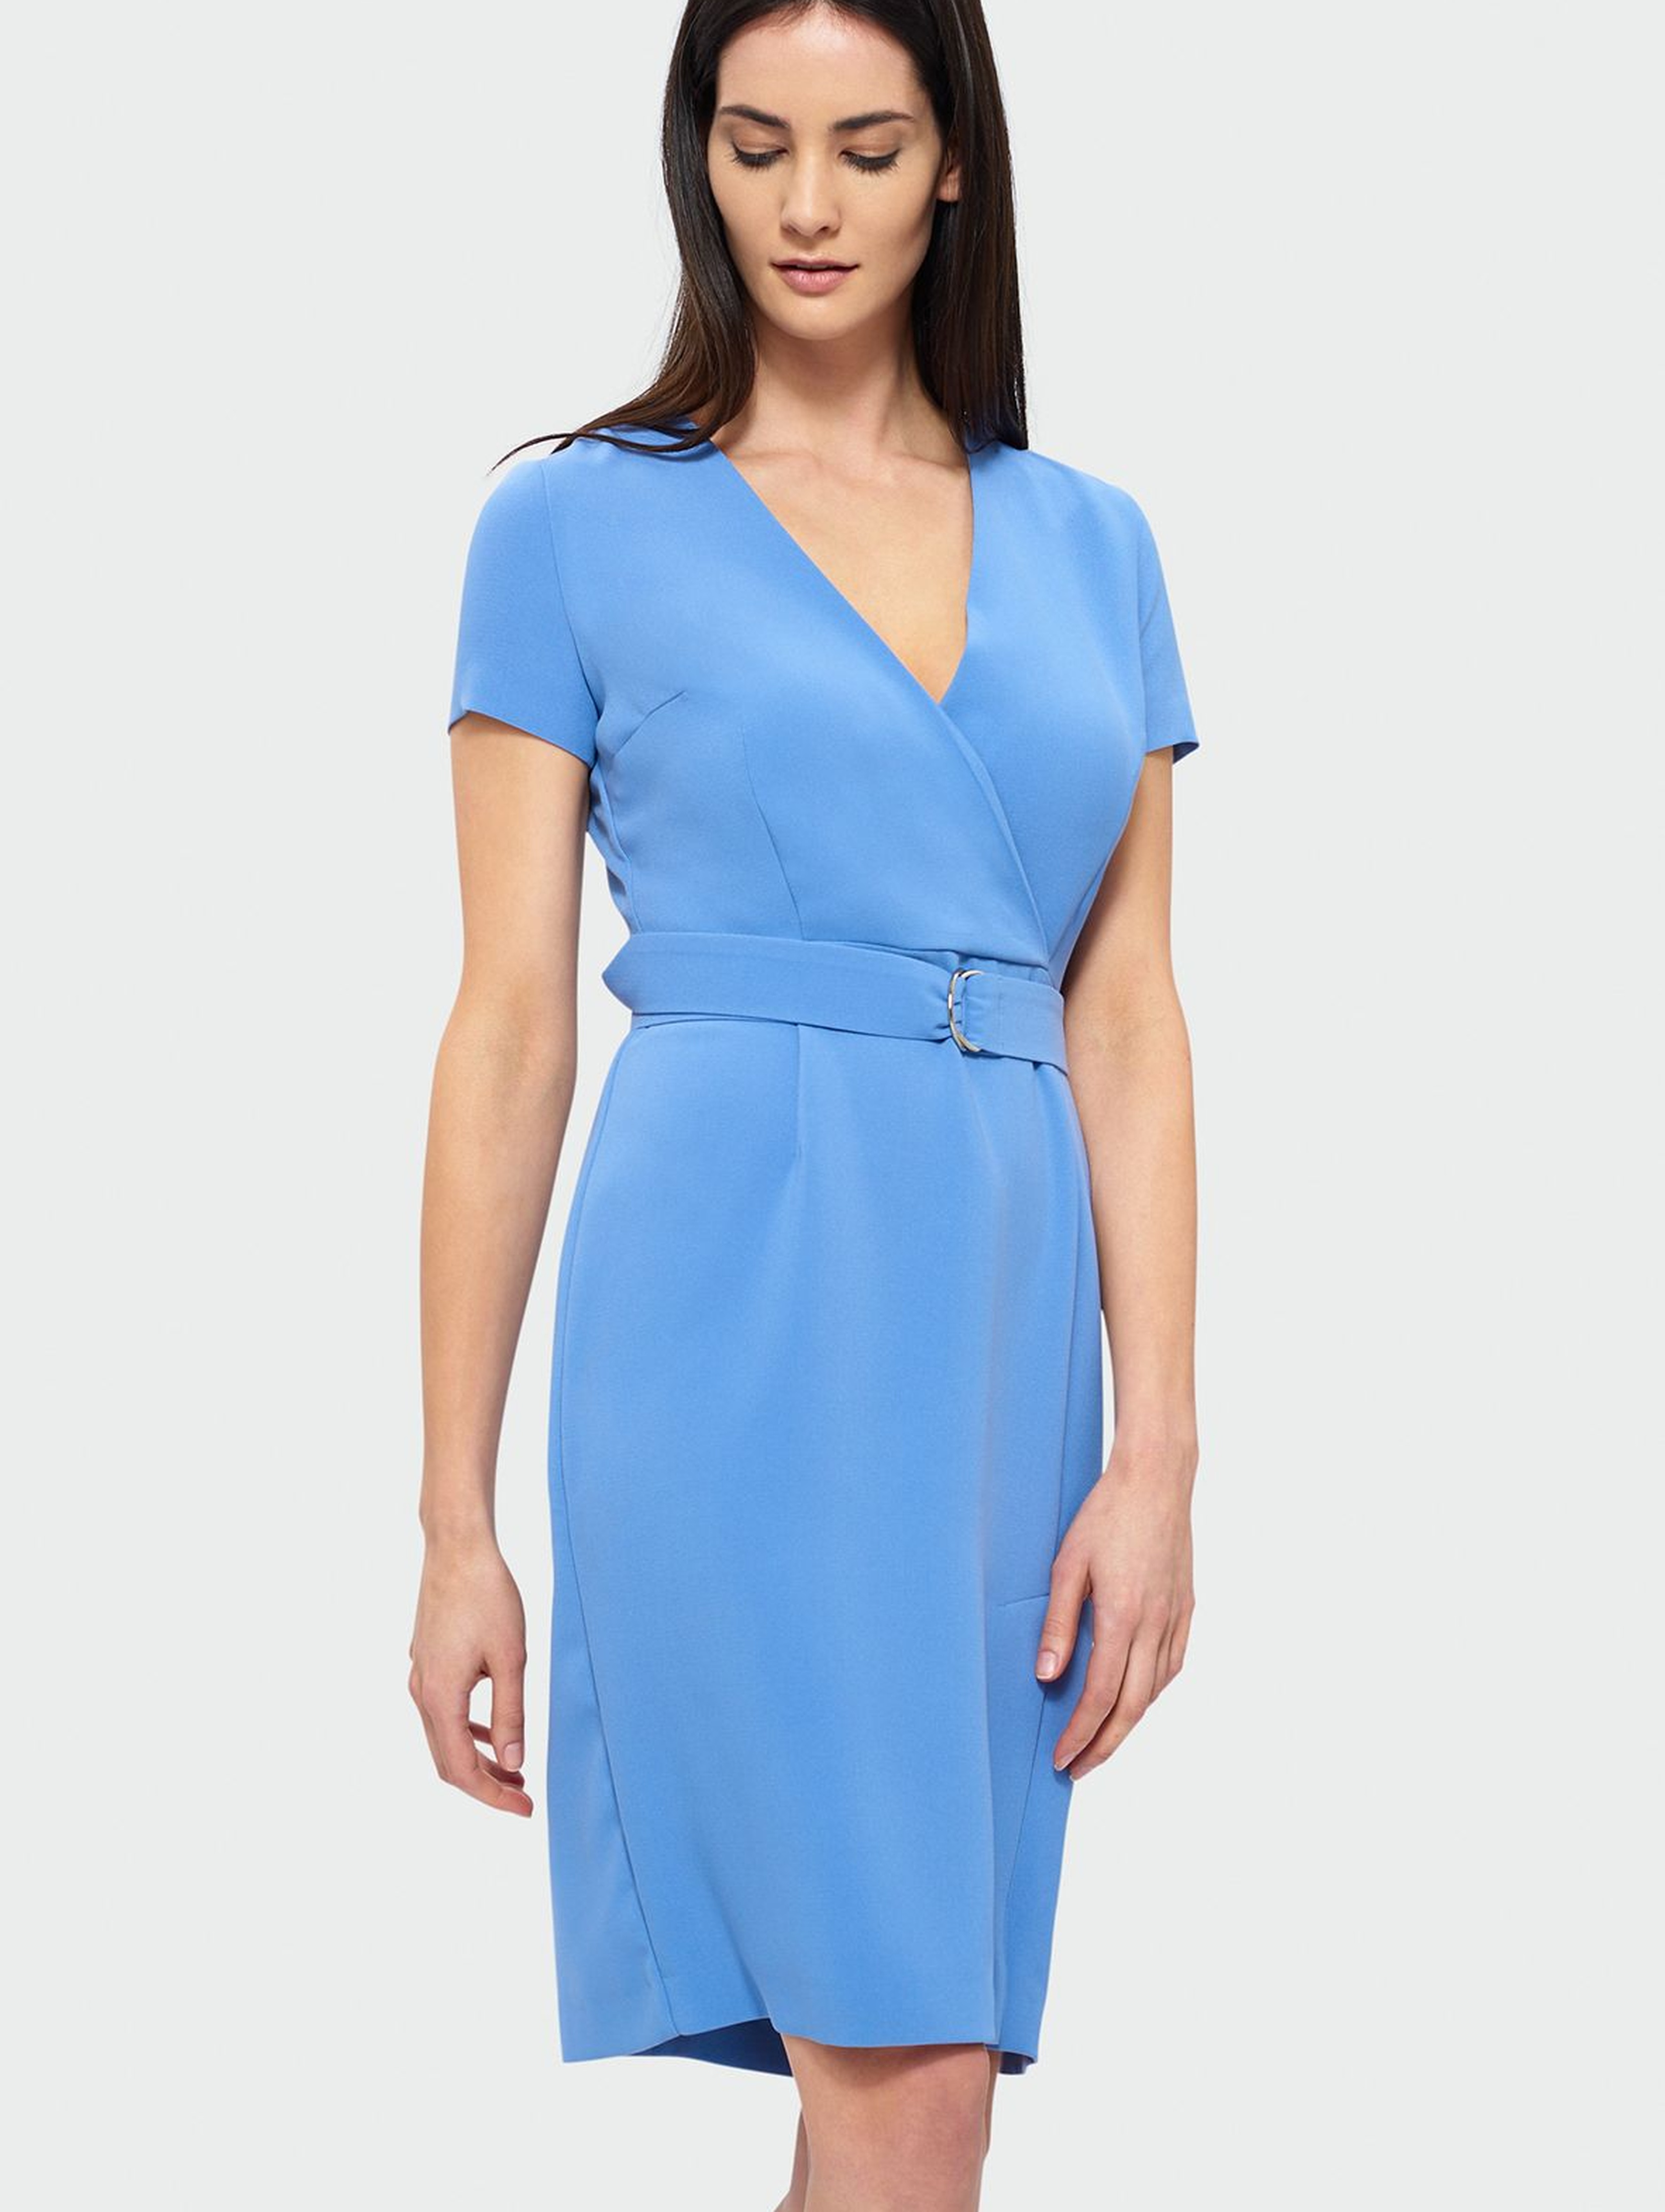 Elegancka sukienka z kopertowym dekoltem -  jasno niebieska